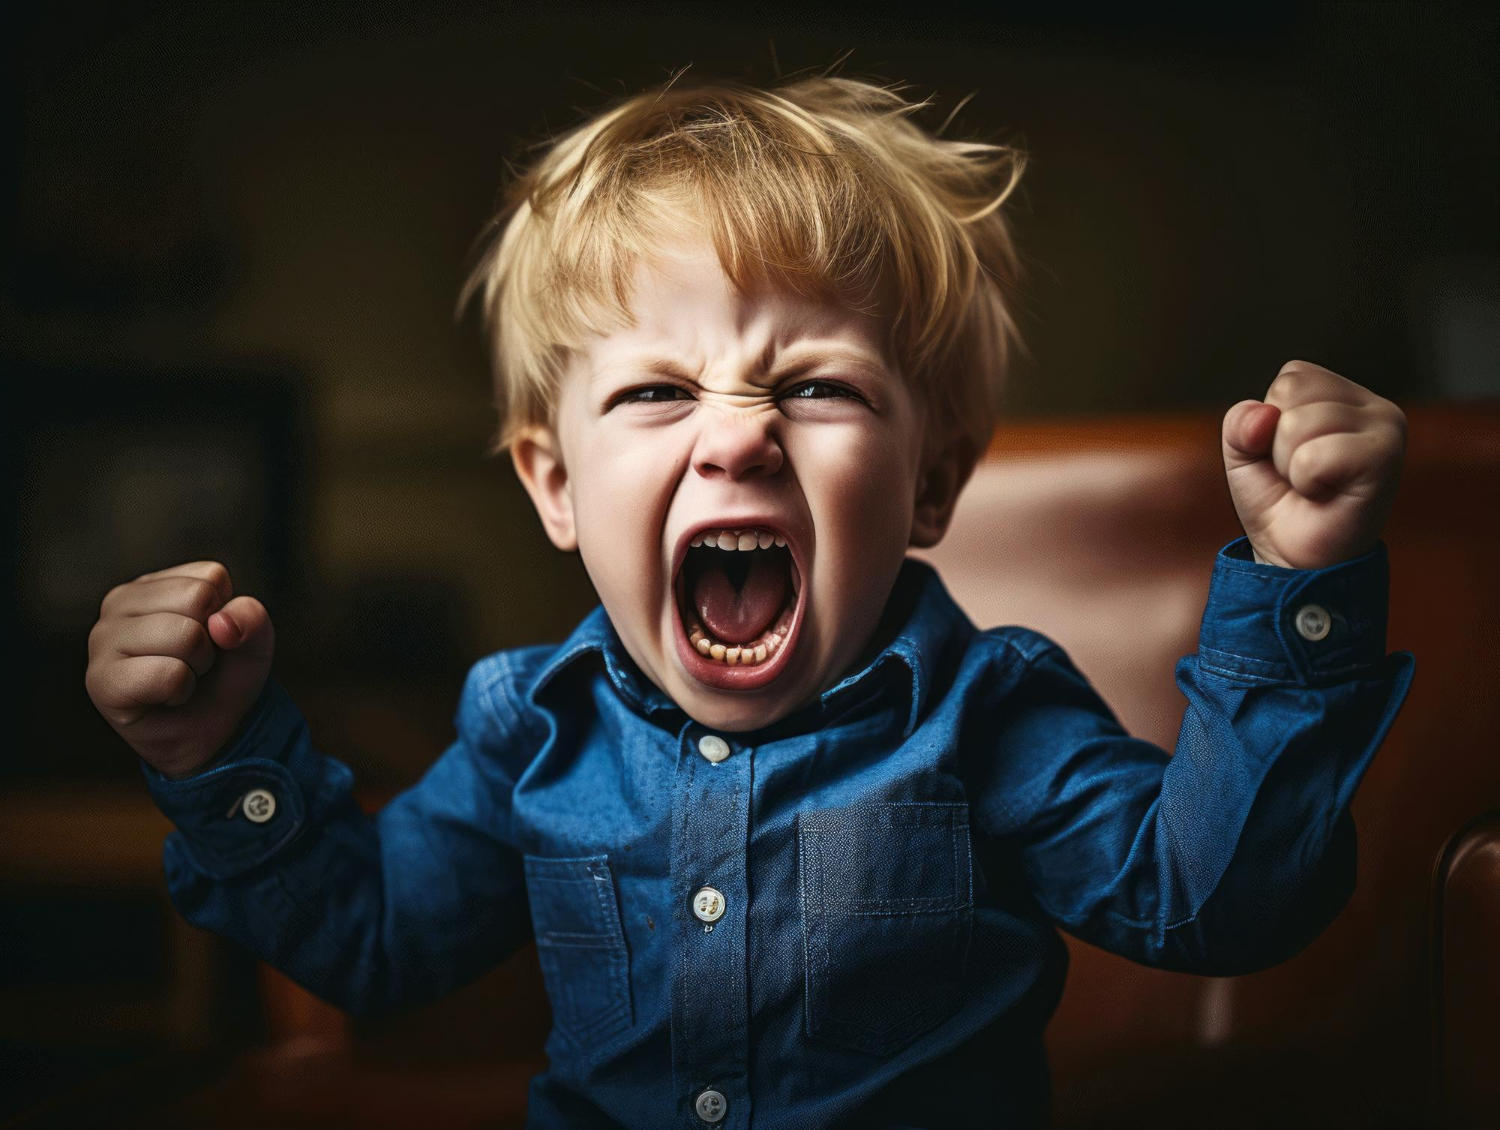 Csapkod, rugdos, kiabál? - 26 ötlet, hogyan zökkentsd ki a hisztiből gyermeked!